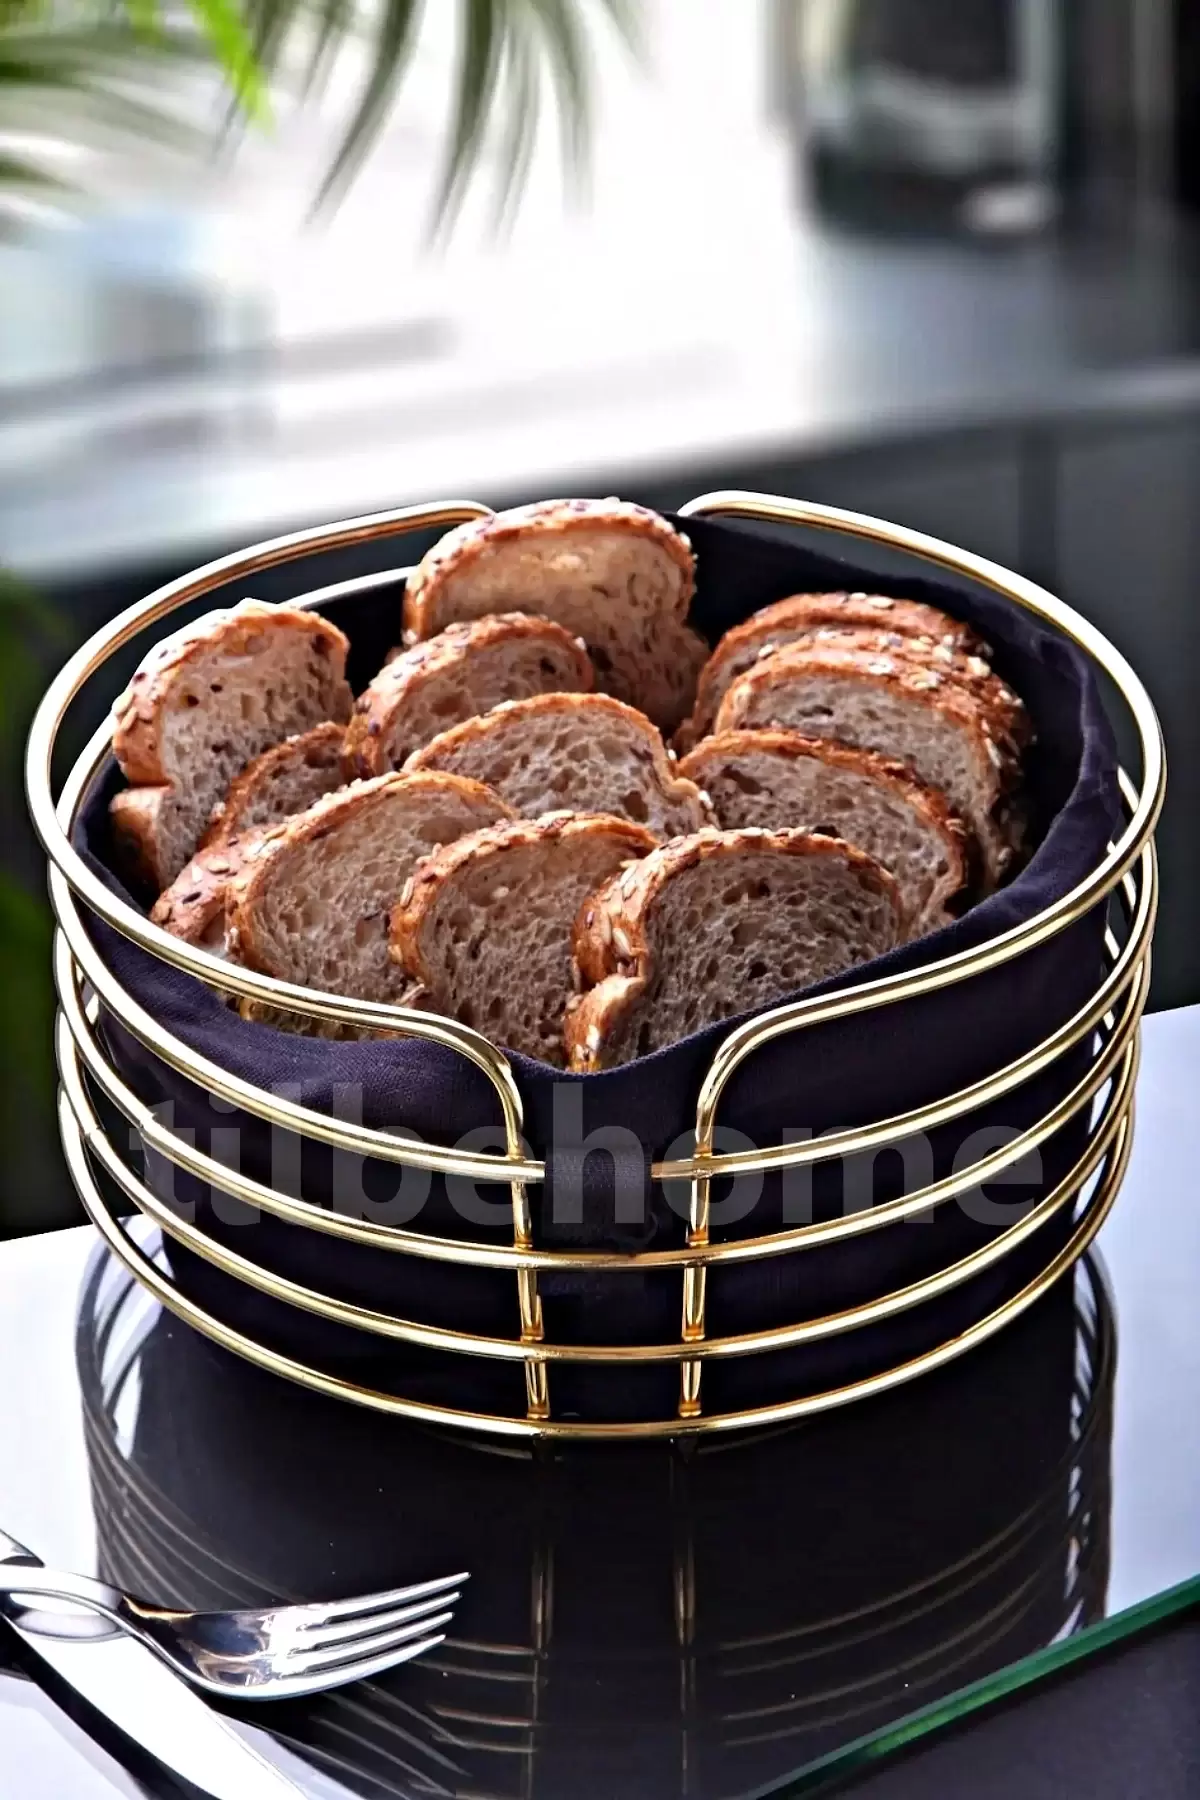 Lüx Gold Ekmeklik Paslanmaz Krom Sofra Ekmek Sepeti Ergonomik Şeritli Oval Kutu Yıkanır Siyah Kumaş